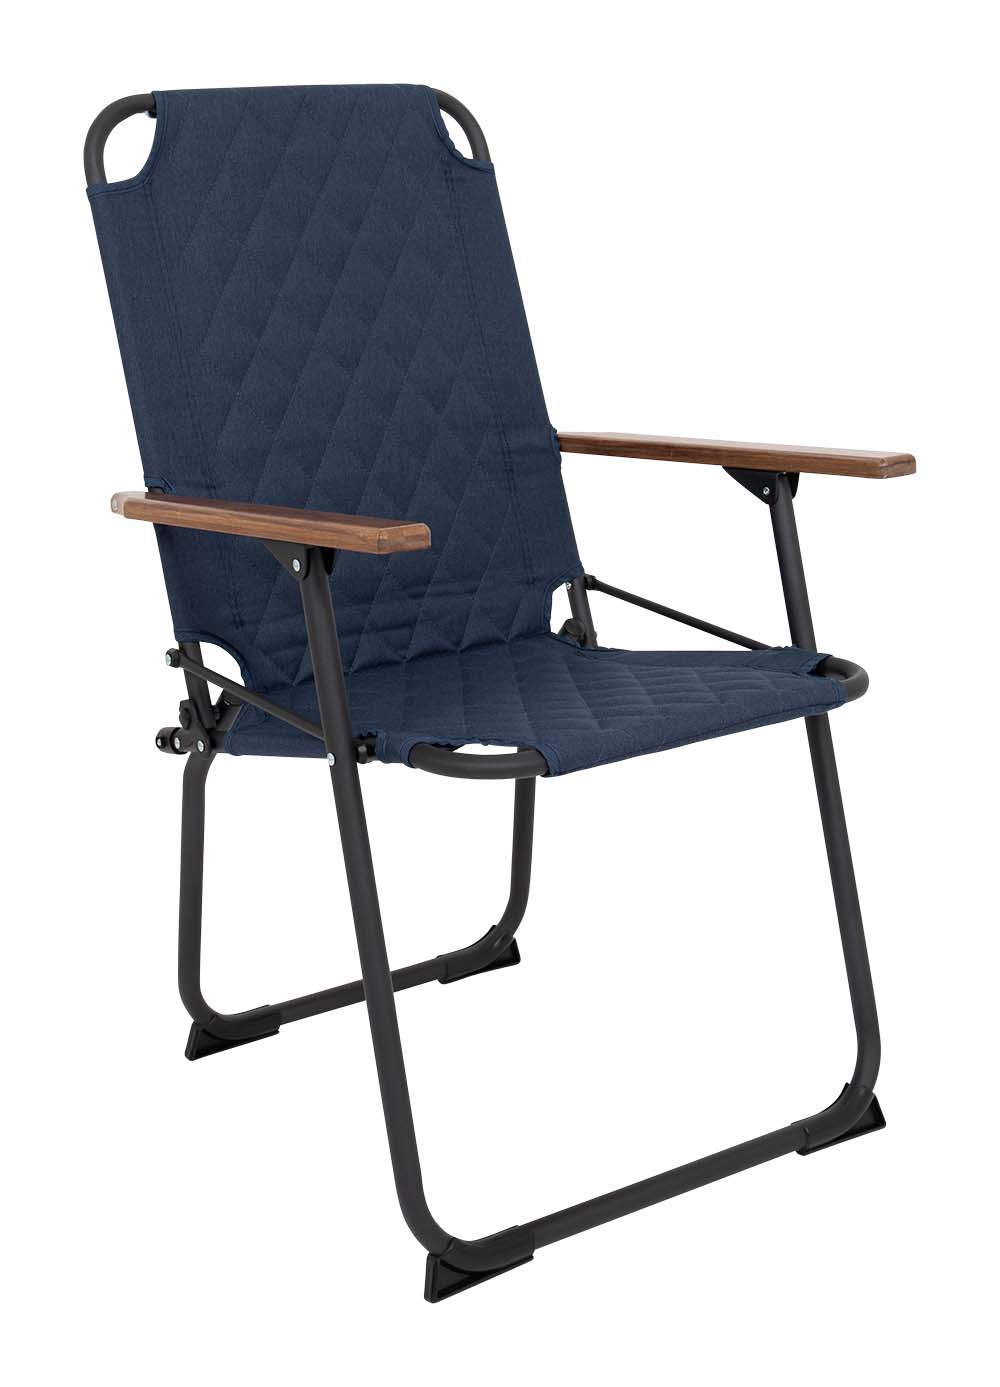 1211897 "De klassieker met een moderne industriële uitstraling. Een stoel waarbij stijl, comfort en functionaliteit worden gecombineerd. Voorzien van een gepolsterde Cationic bekleding voor ultiem comfort, een lichtgewicht aluminium frame en bamboe armleggers. Daarnaast is het stiksel voorzien van een modern patroon. Een ideale stoel voor in de tuin of op de camping, maar ook op het balkon en in de woonkamer. Daarnaast is deze stoel voorzien van extra stabilisatoren en een 'safety-lock' tegen ongewenst inklappen. Compact mee te nemen."